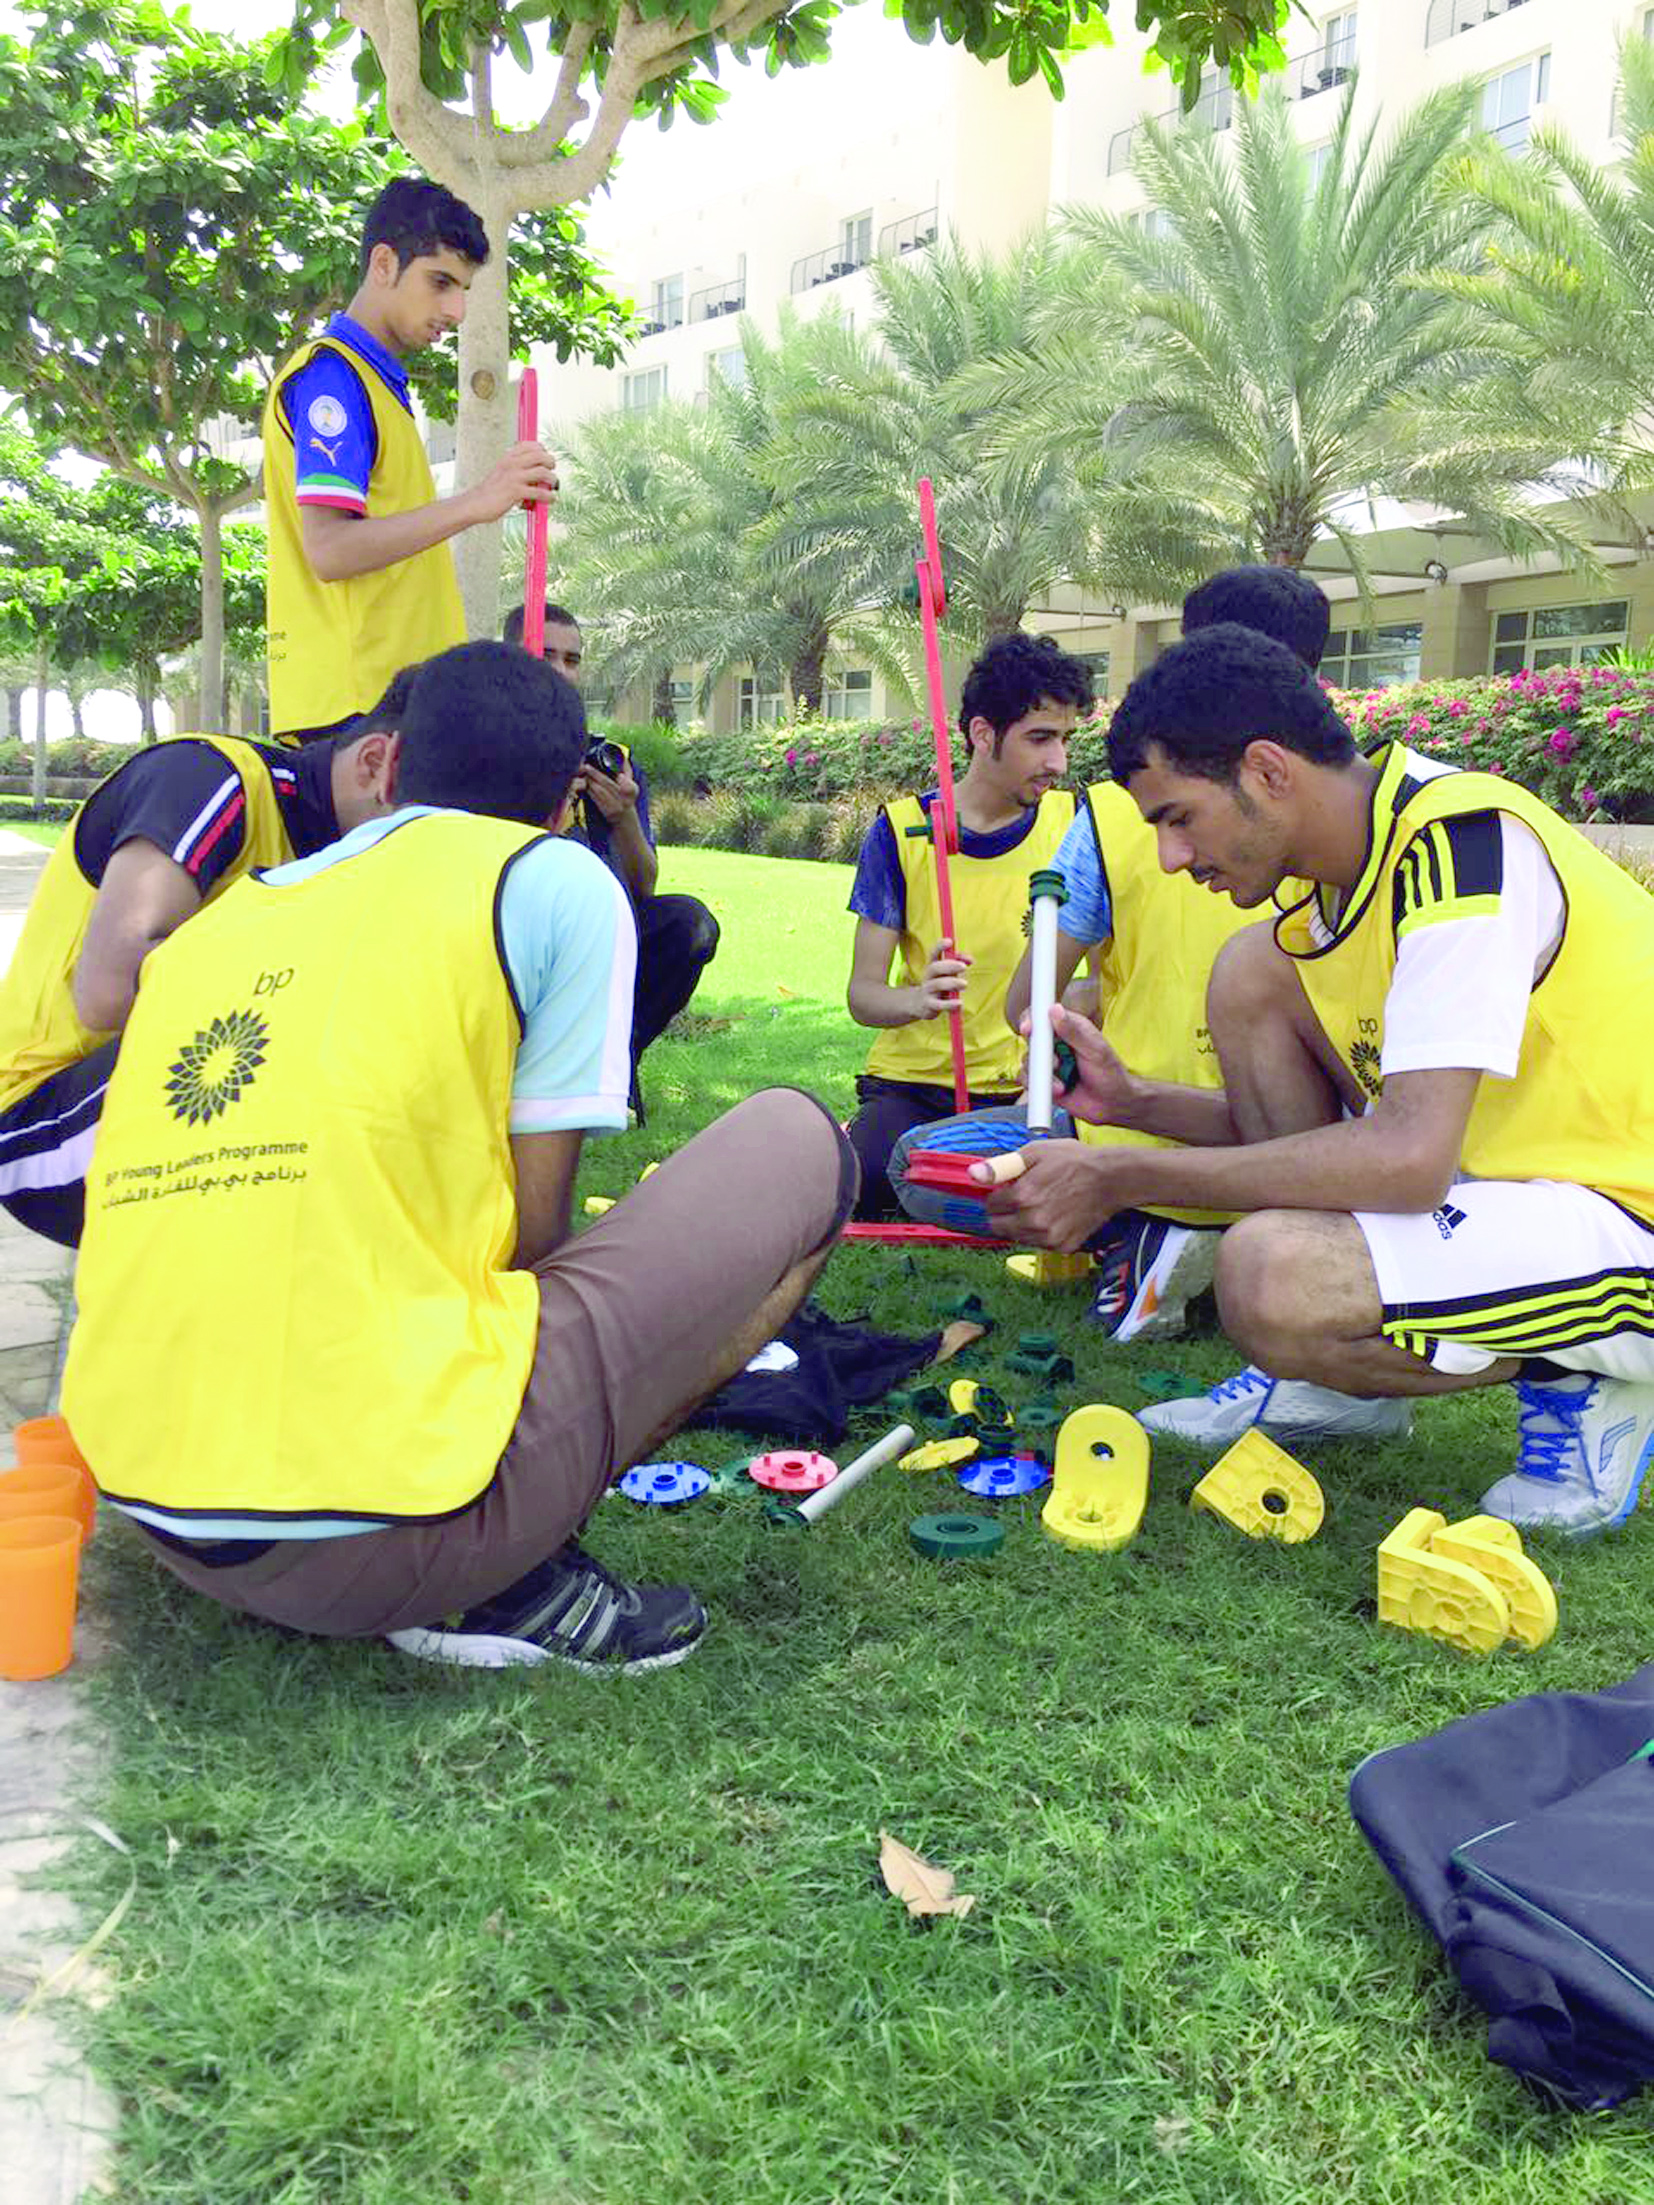 بدعم من بي. بي. عُمان ومشروع عُمان للإبحاربرنامج "خزان للقادة الشباب" يدرّب 150 طالبا وطالبة